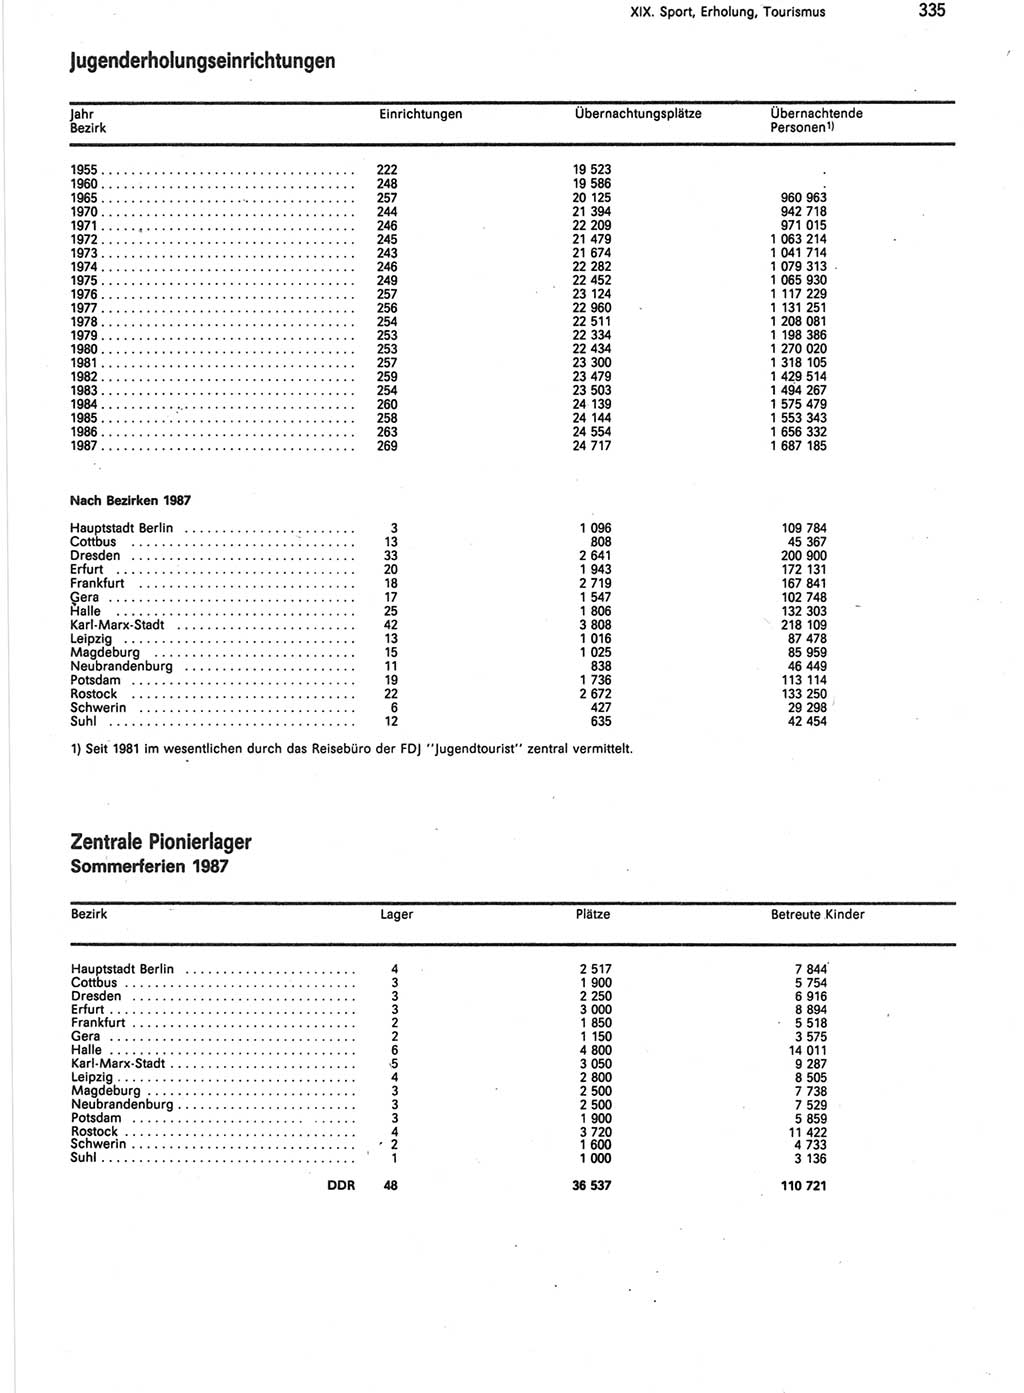 Statistisches Jahrbuch der Deutschen Demokratischen Republik (DDR) 1988, Seite 335 (Stat. Jb. DDR 1988, S. 335)